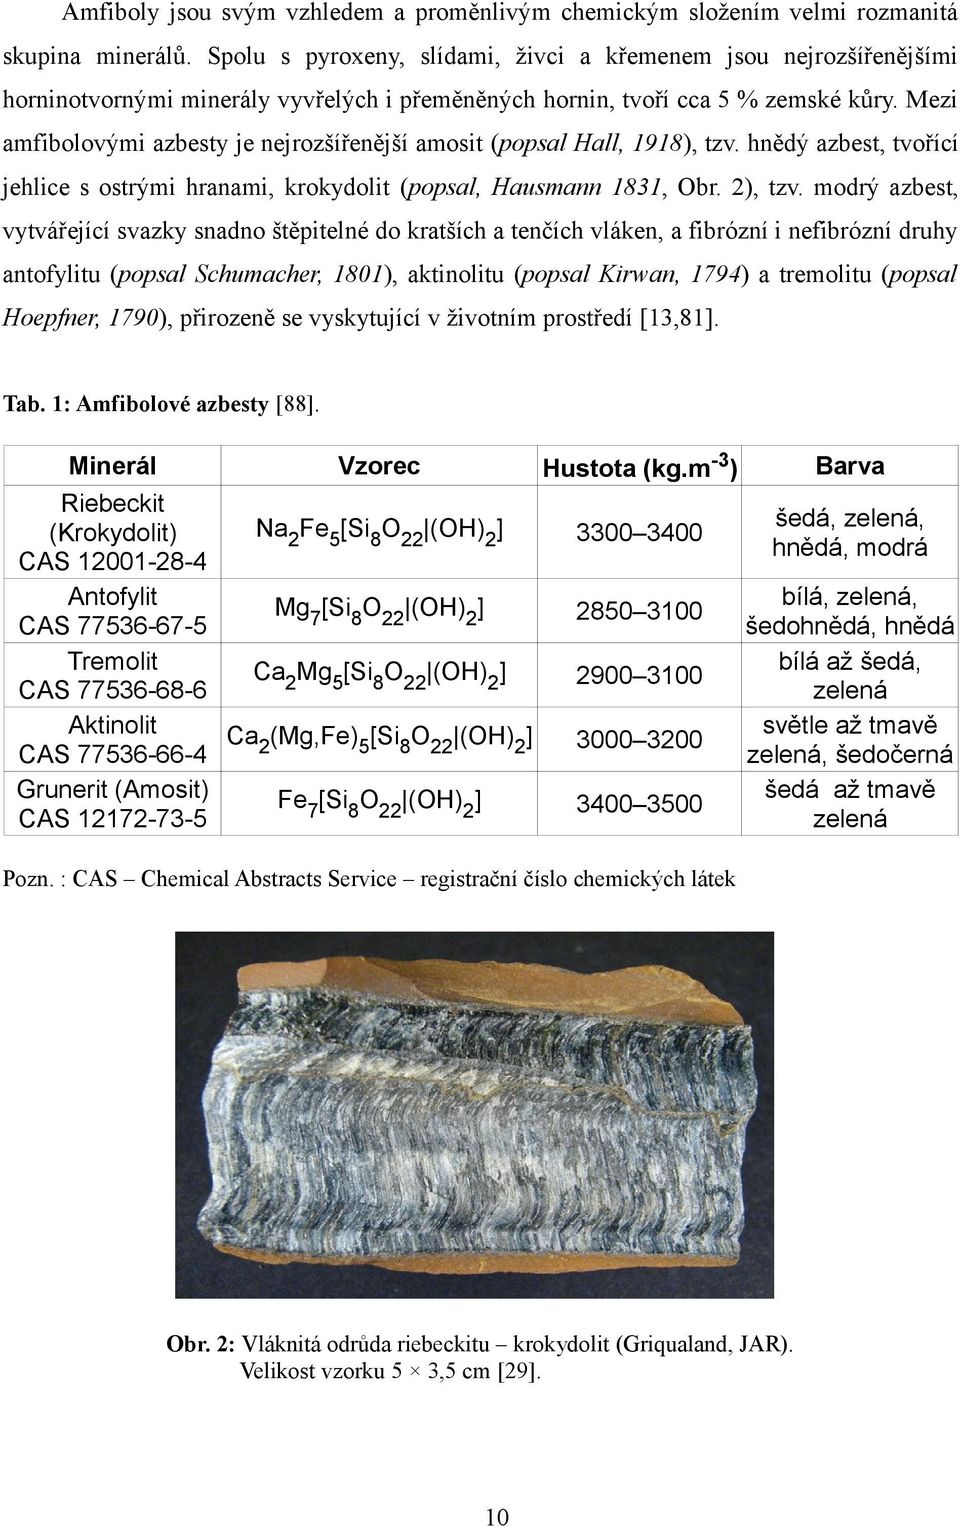 Mezi amfibolovými azbesty je nejrozšířenější amosit (popsal Hall, 1918), tzv. hnědý azbest, tvořící jehlice s ostrými hranami, krokydolit (popsal, Hausmann 1831, Obr. 2), tzv.